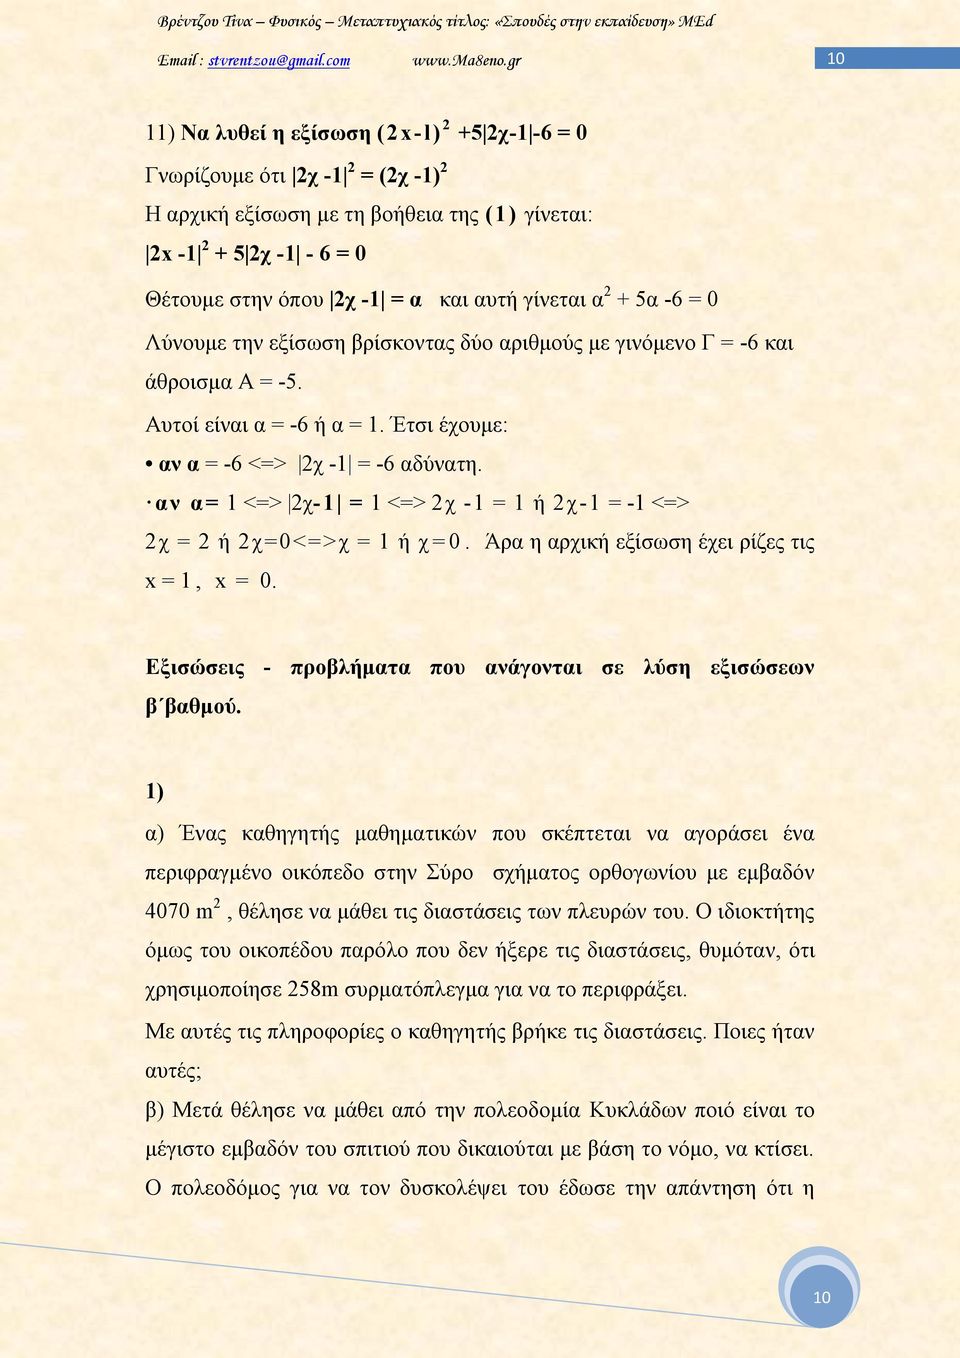 αν α= 1 <=> 2χ-1 = 1 <=> 2χ -1 = 1 ή 2χ-1 = -1 <=> 2χ = 2 ή 2χ=0<=> χ = 1 ή χ=0. Άρα η αρχική εξίσωση έχει ρίζες τις x = 1, x = 0. Εξισώσεις - προβλήματα που ανάγονται σε λύση εξισώσεων β βαθμού.